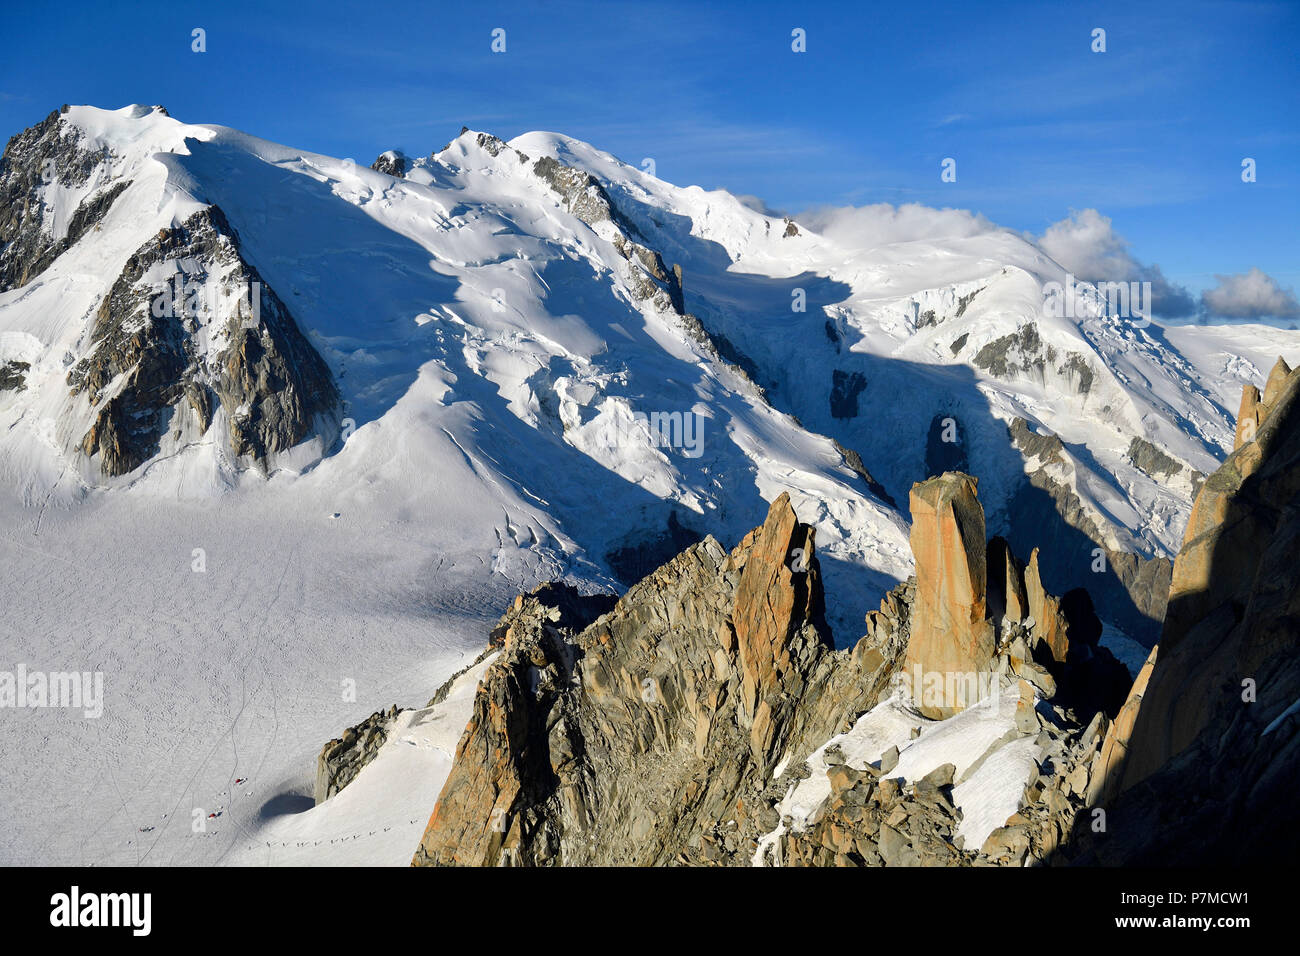 France, Haute Savoie, Chamonix Mont Blanc, Mont Blanc (4810m) Banque D'Images